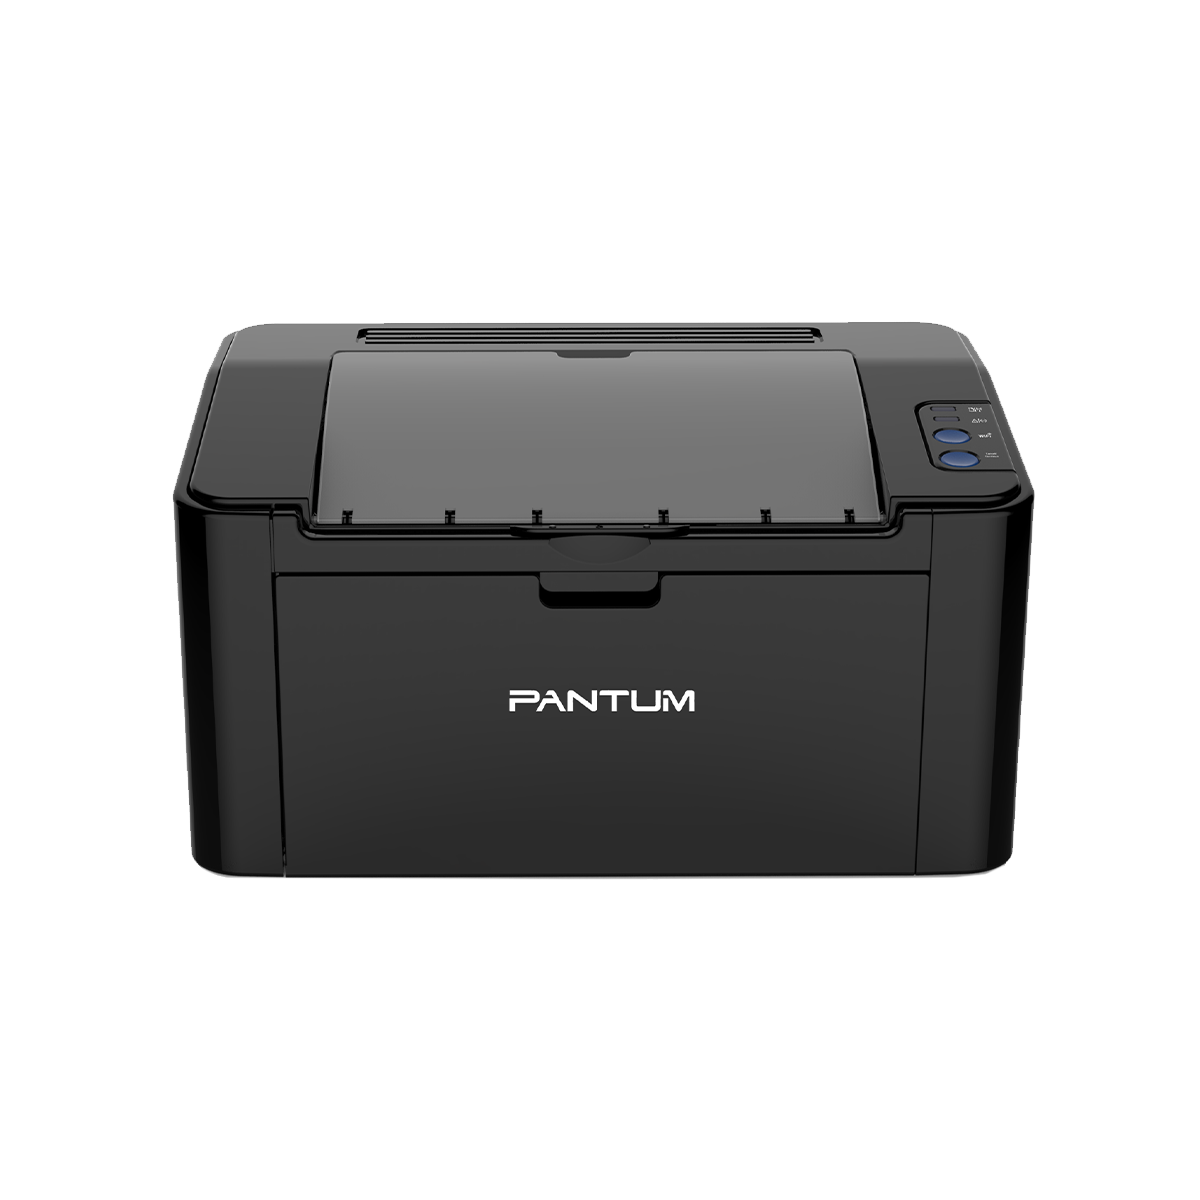 Pantum P2500 Printer